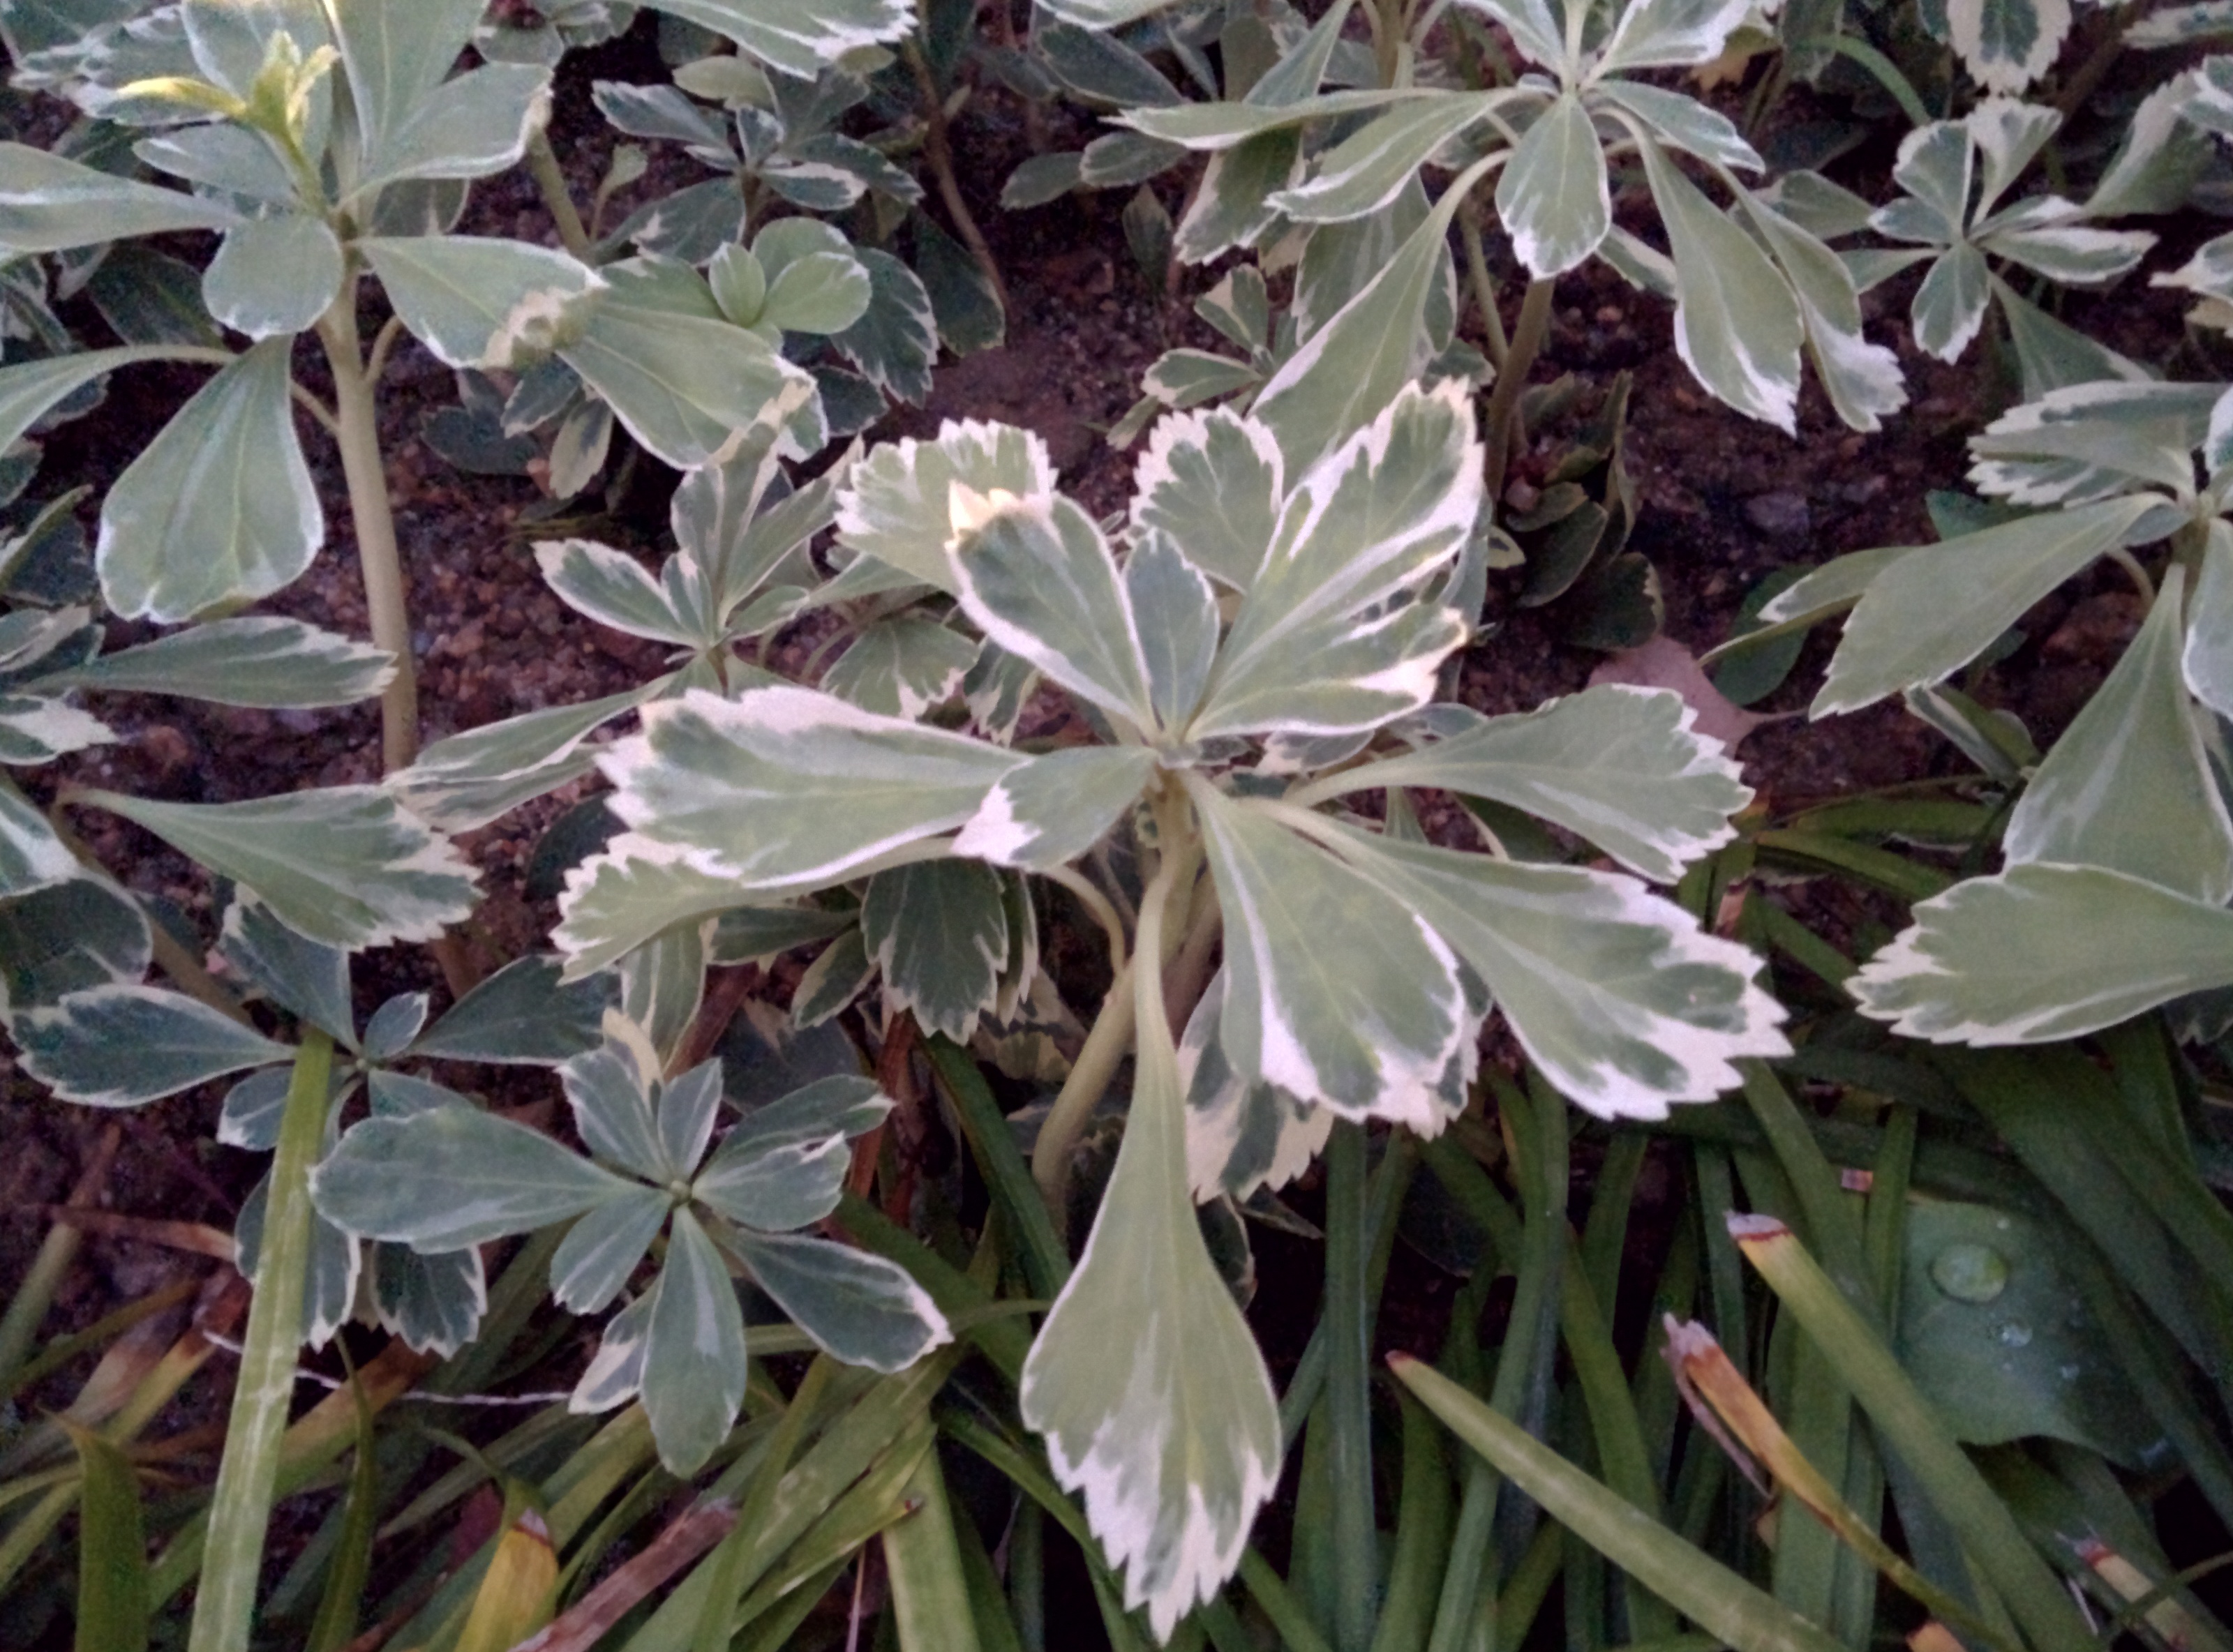 IMG_20151110_064843.jpg 잎 테두리가 하얀 수호초, 무늬수호초